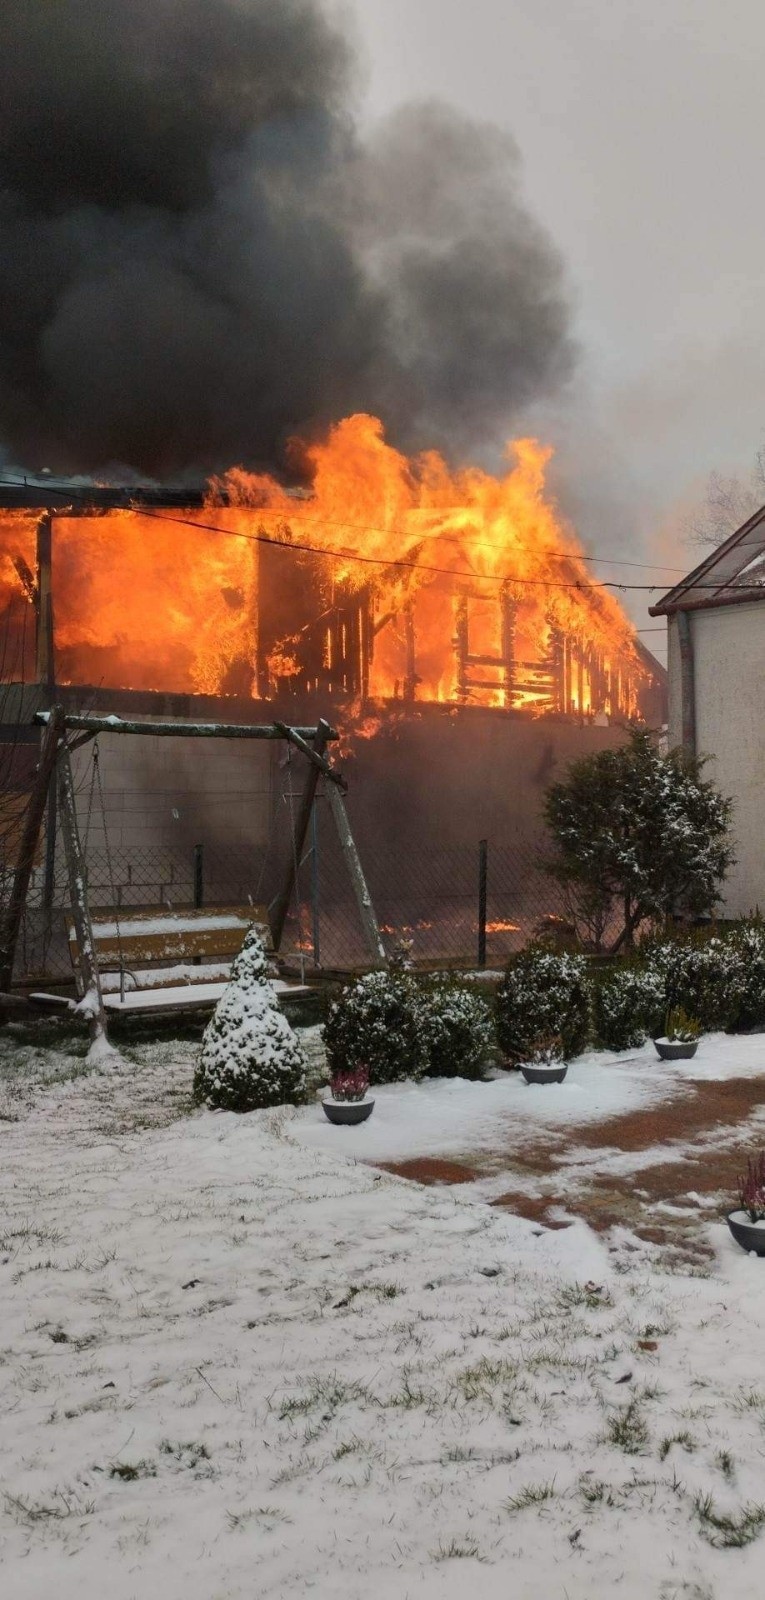 Strażak z OSP Raszujka stracił dom w pożarze. Wraz z rodziną zamieszkał w lokalu zastępczym. Do pożaru doszło 3.12.2022